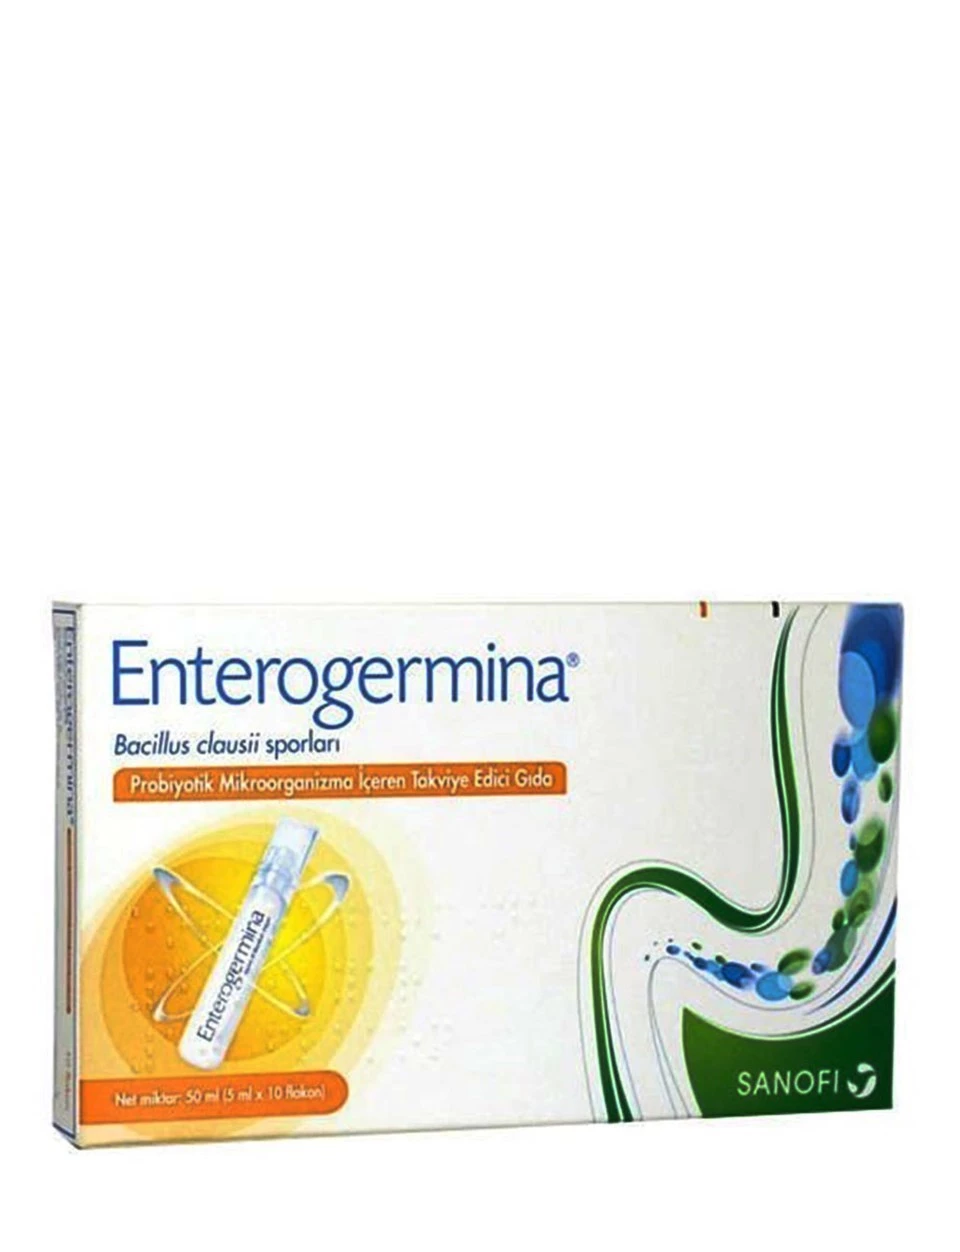 Enterogermina Takviye Edici Gıda 50ml ( 5ml x 10 flakon )